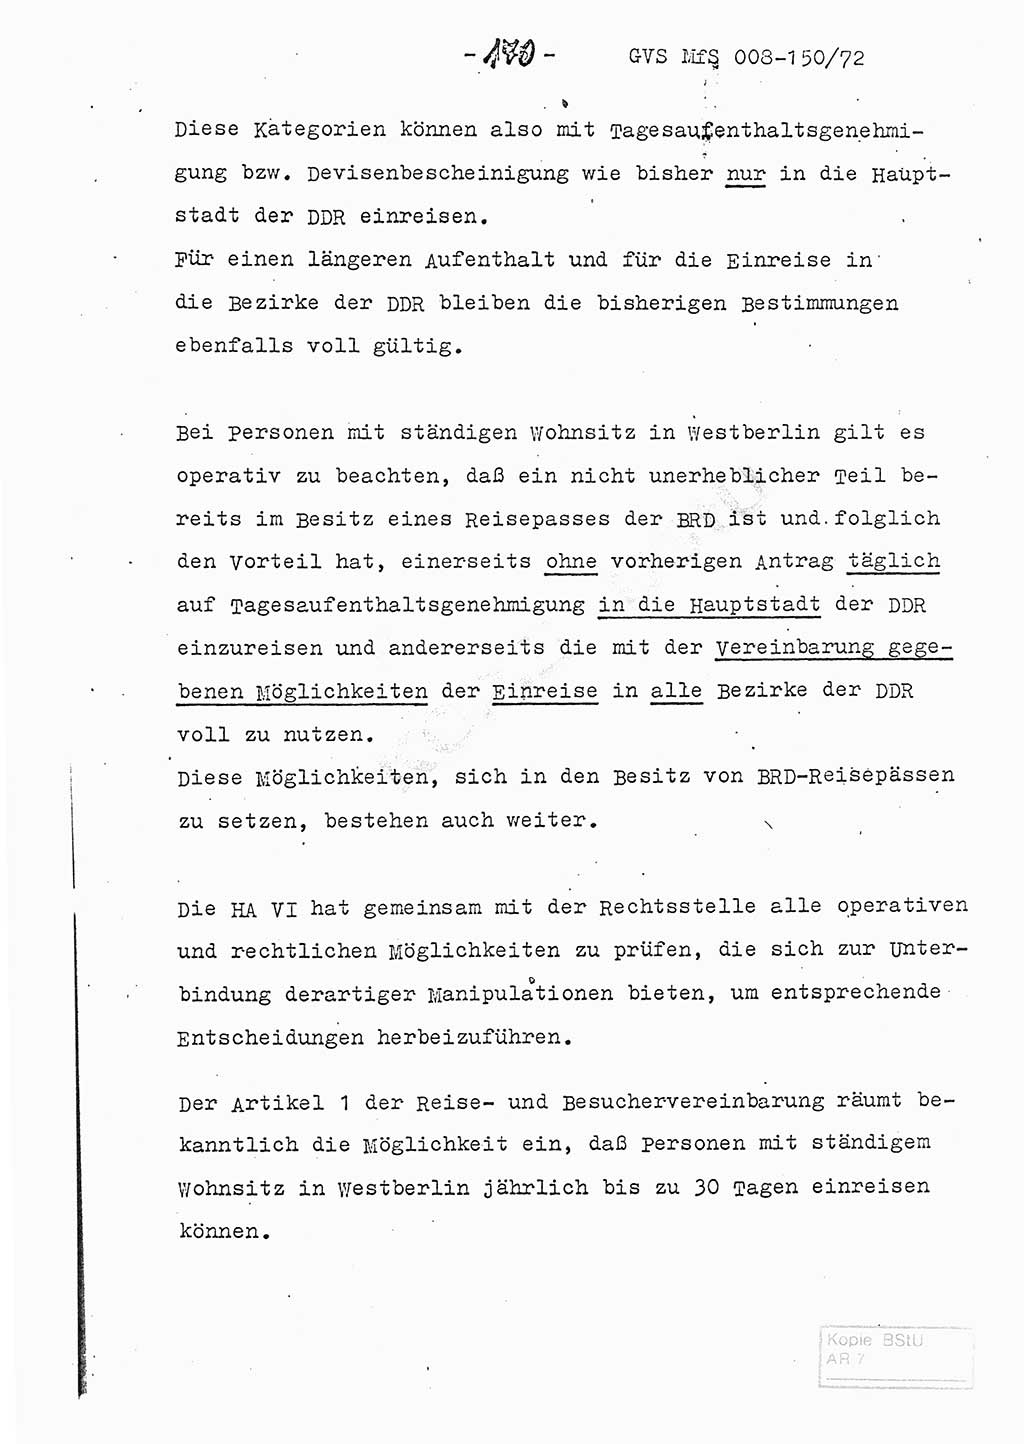 Referat (Entwurf) des Genossen Minister (Generaloberst Erich Mielke) auf der Dienstkonferenz 1972, Ministerium fÃ¼r Staatssicherheit (MfS) [Deutsche Demokratische Republik (DDR)], Der Minister, Geheime VerschluÃŸsache (GVS) 008-150/72, Berlin 25.2.1972, Seite 170 (Ref. Entw. DK MfS DDR Min. GVS 008-150/72 1972, S. 170)